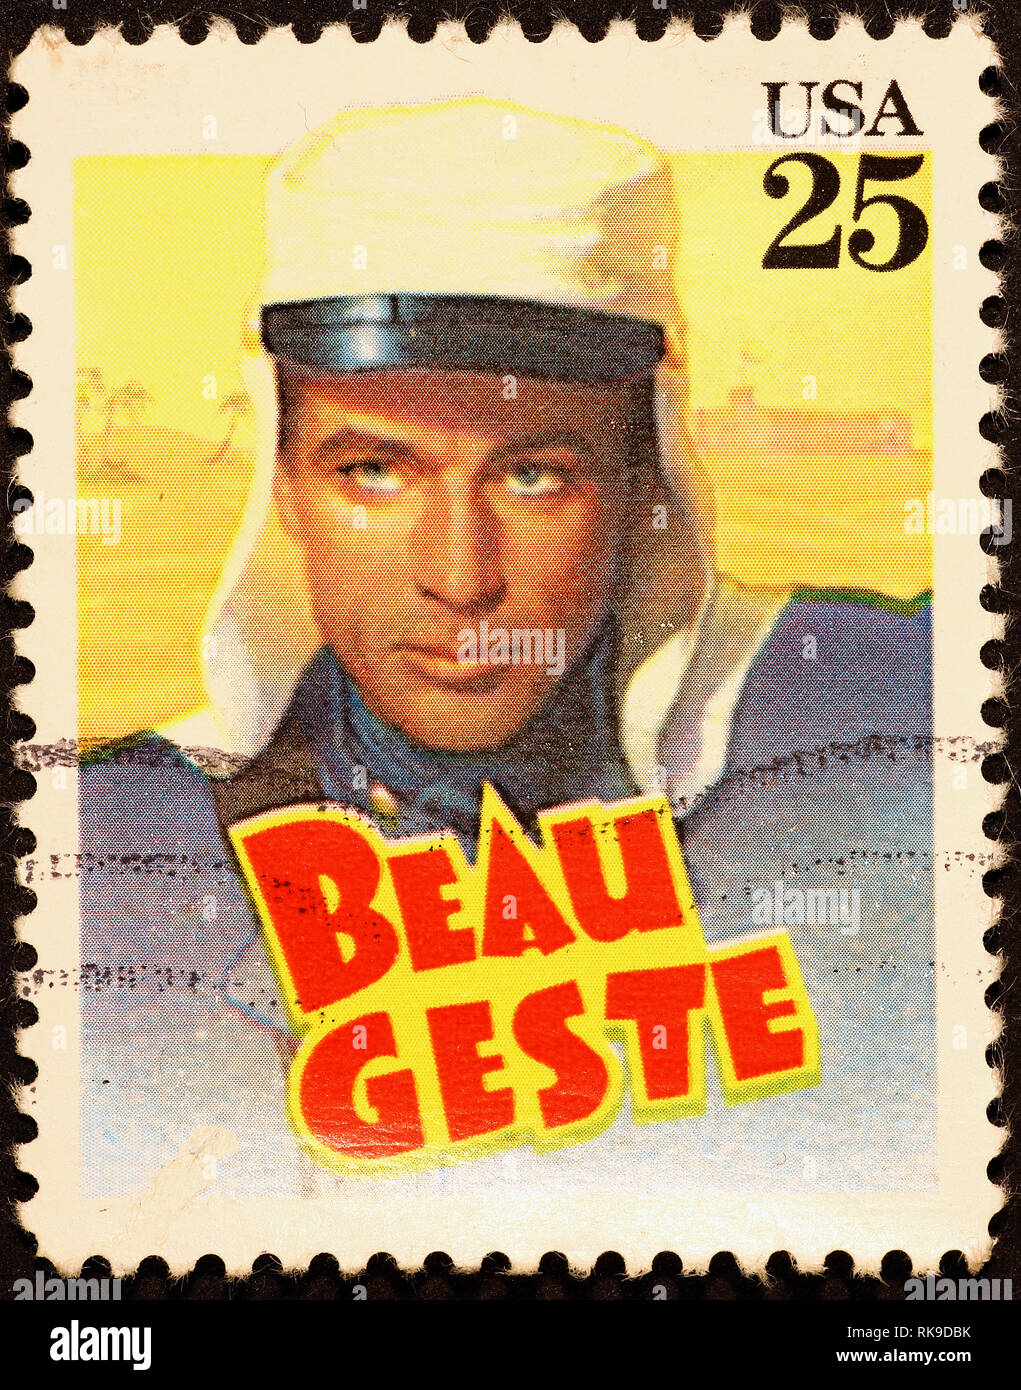 Affiche de film Beau Geste sur timbre américain Banque D'Images